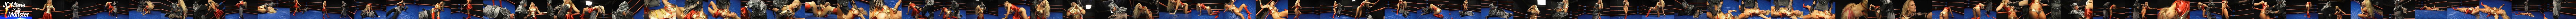 Jc Marie Wrestling Fetish Porn - Jc Marie Vs Monster â€” vPorn